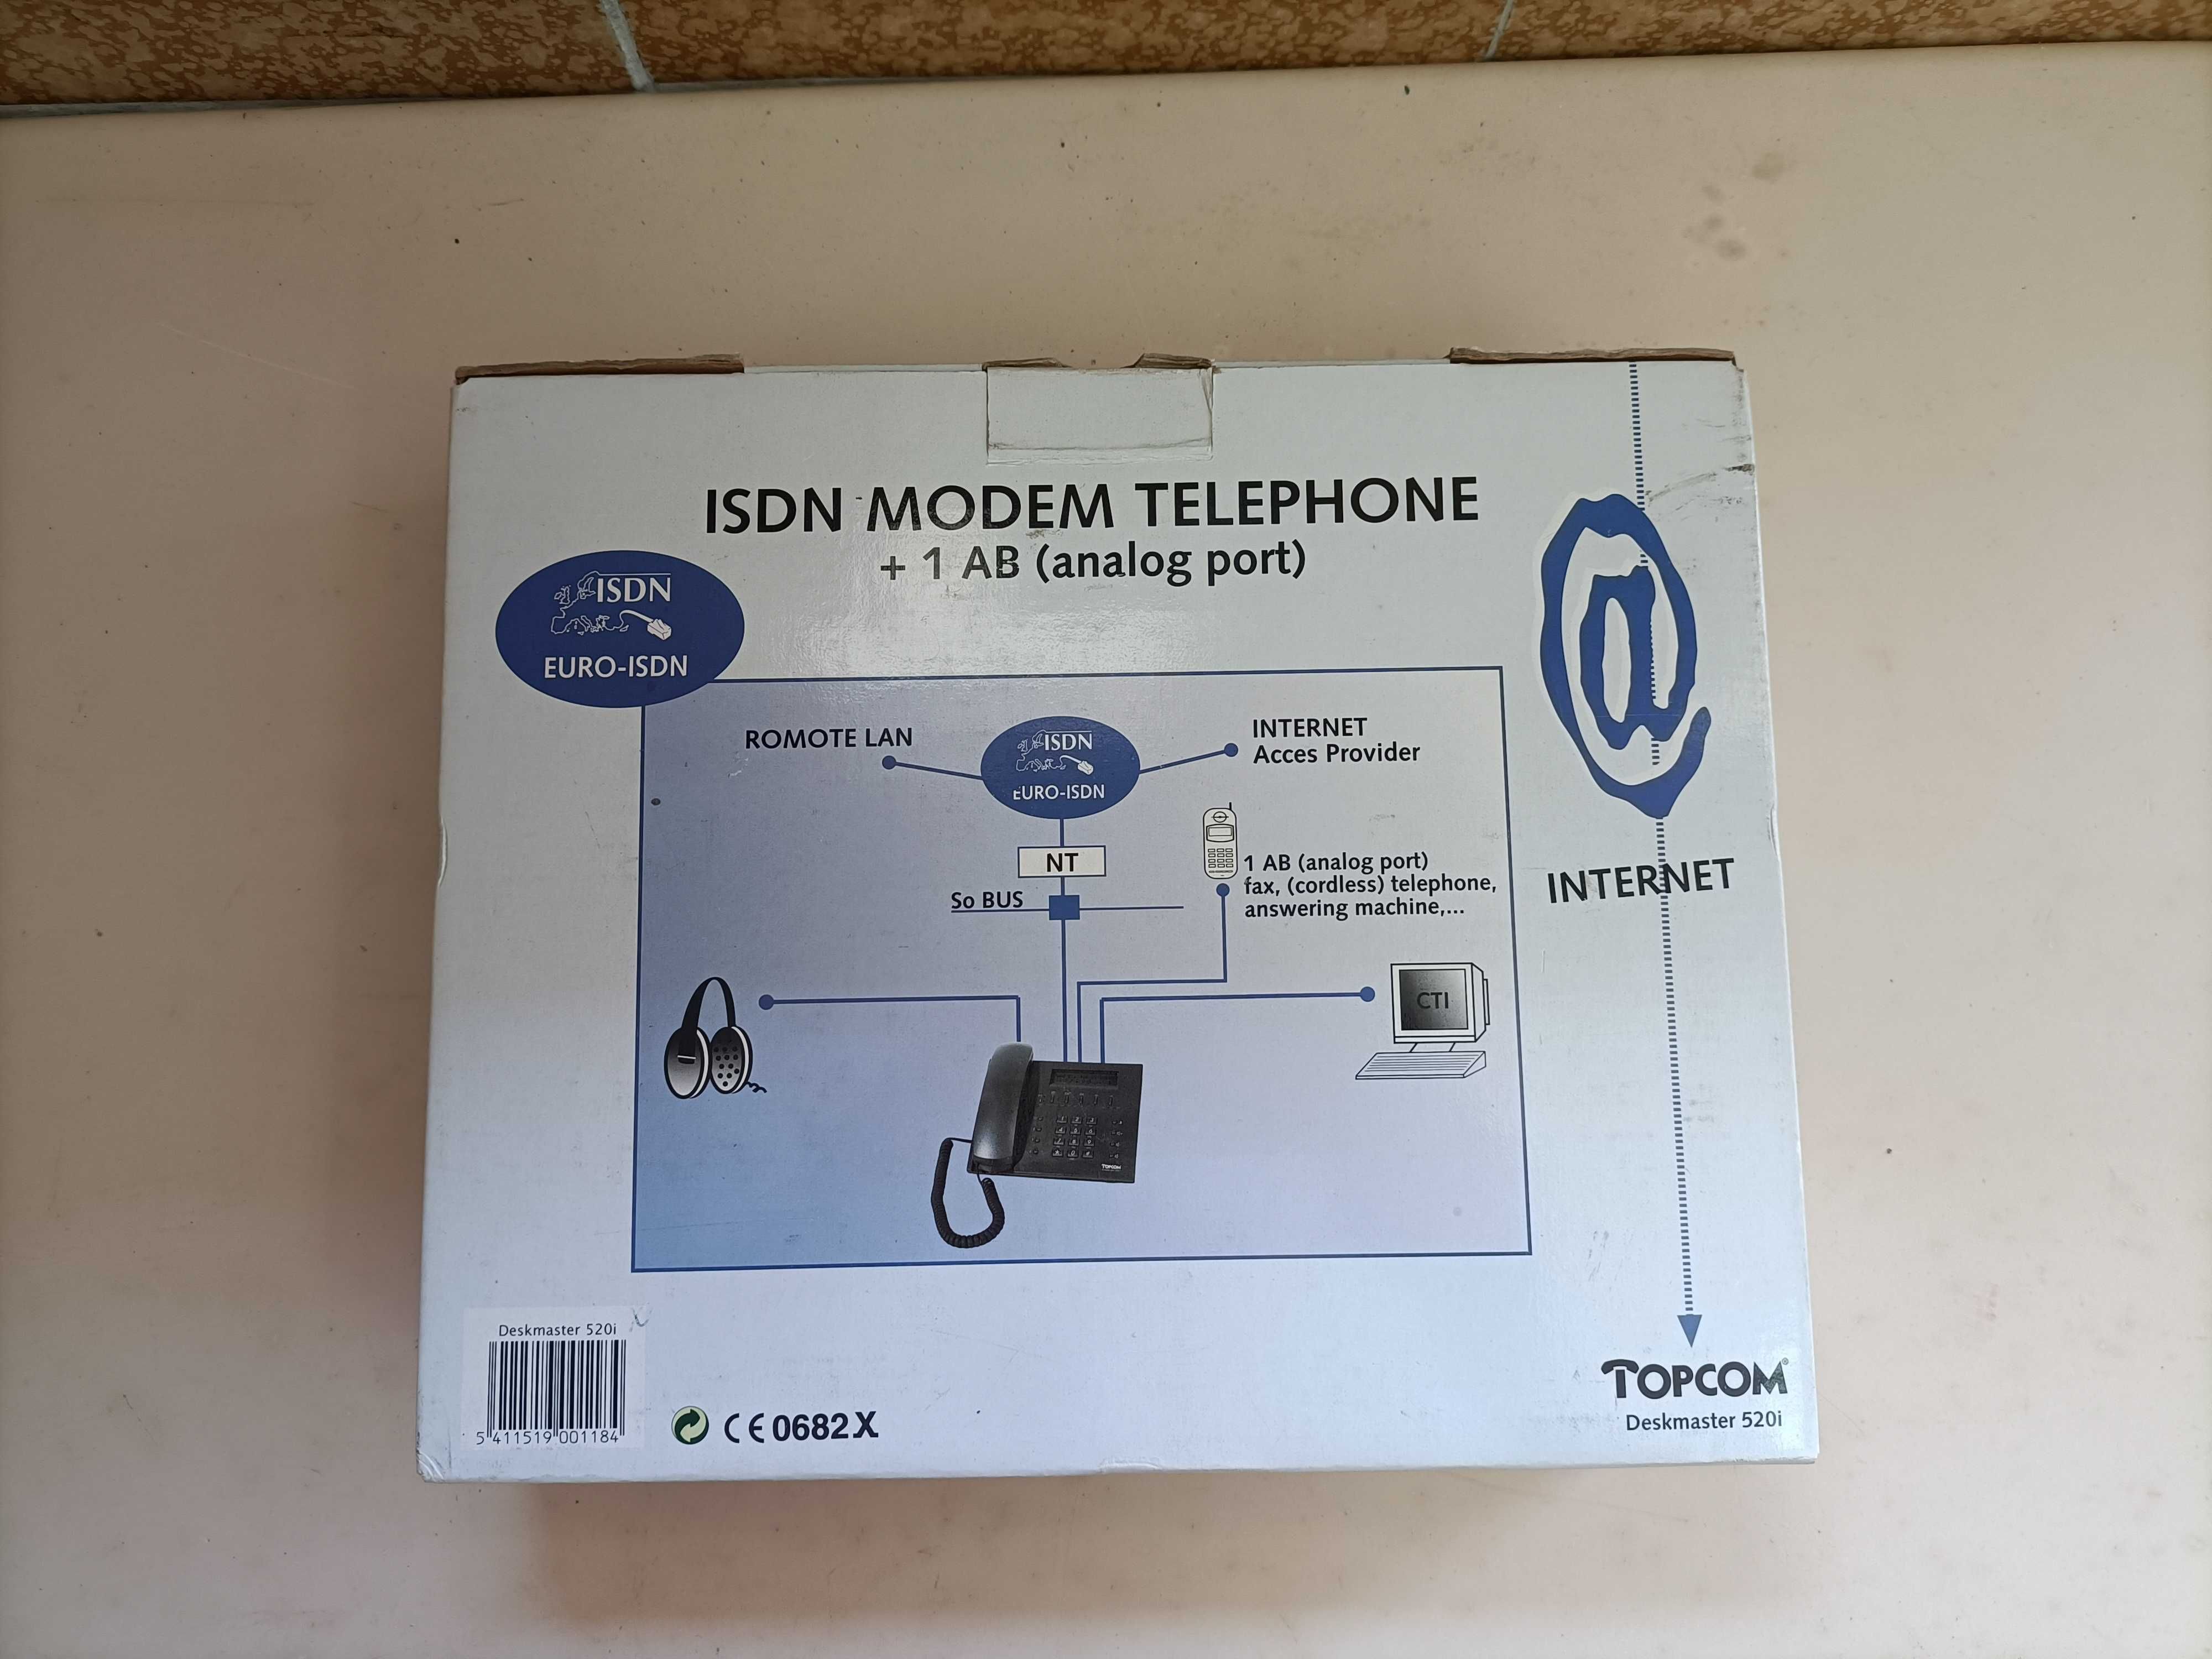 Telefone ISDN RDIS Topcom Deskmaster 520i como novo